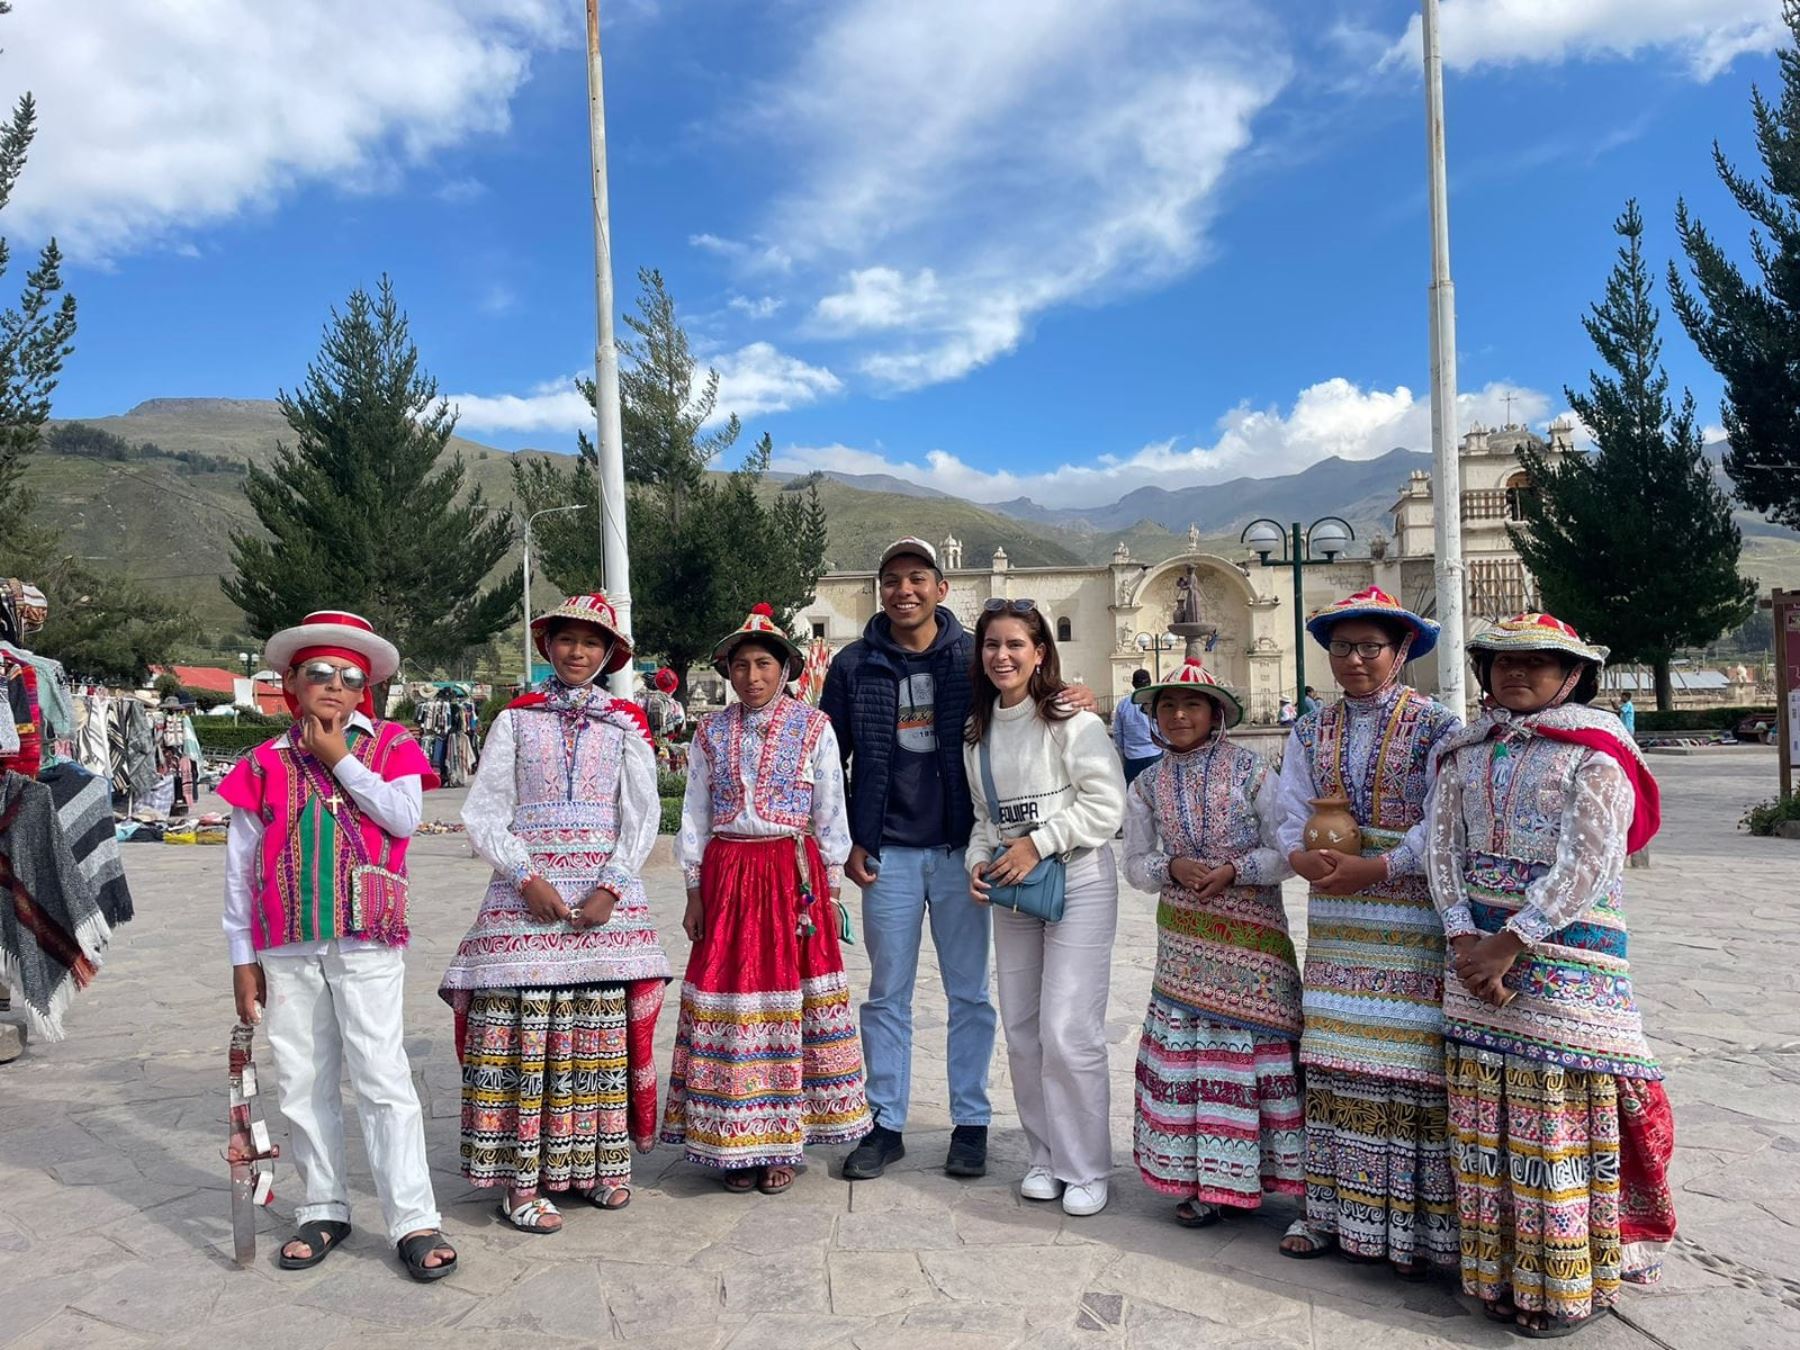 El número de turistas que recibió el valle del Colca, uno de los principales destinos turísticos de Arequipa, durante el feriado largo por Semana Santa superó las expectativas. ANDINA/Difusión